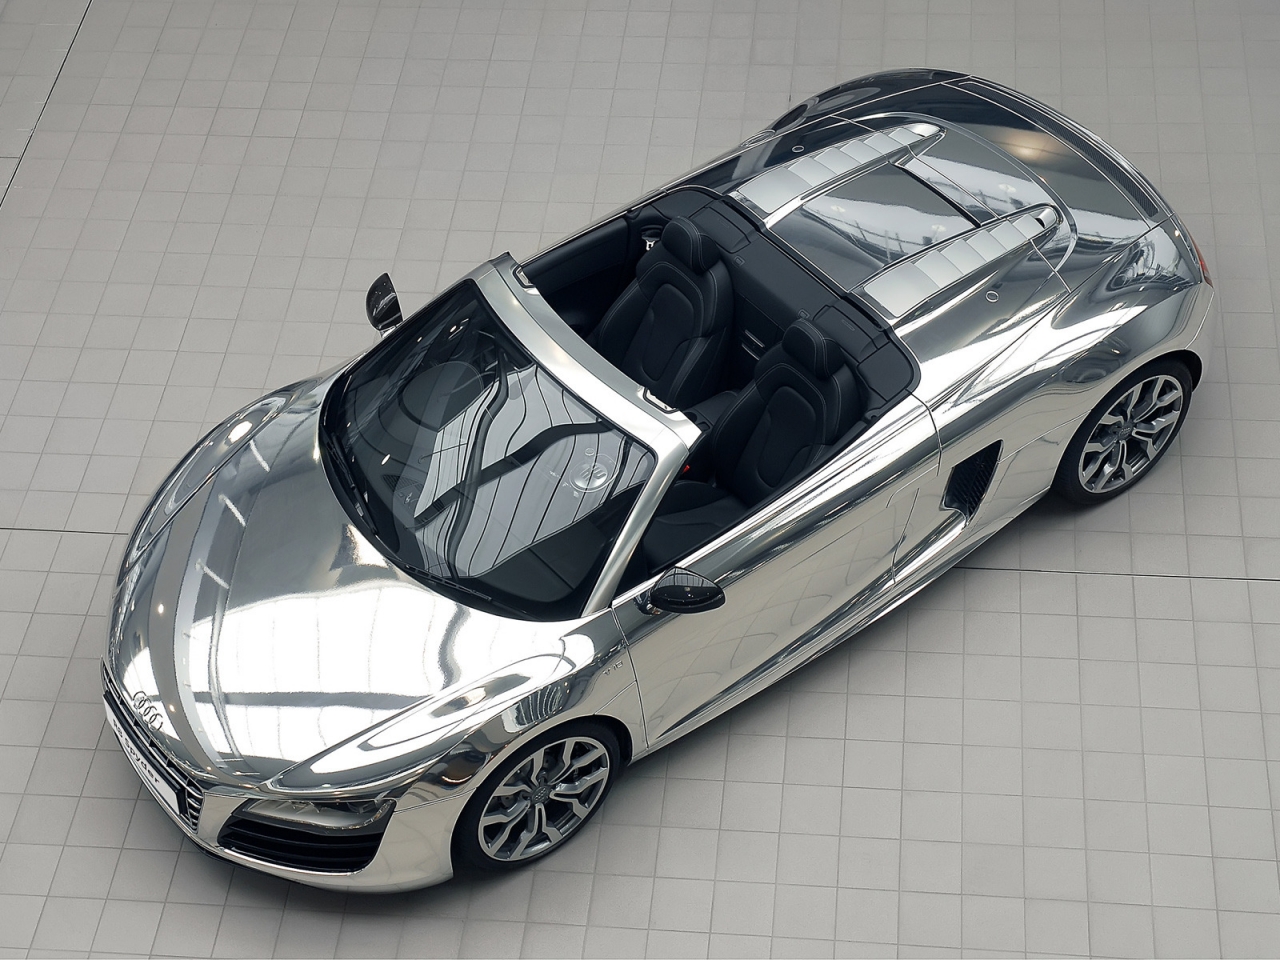 Audi R8 V10 Spyder Chrome for 1280 x 960 resolution